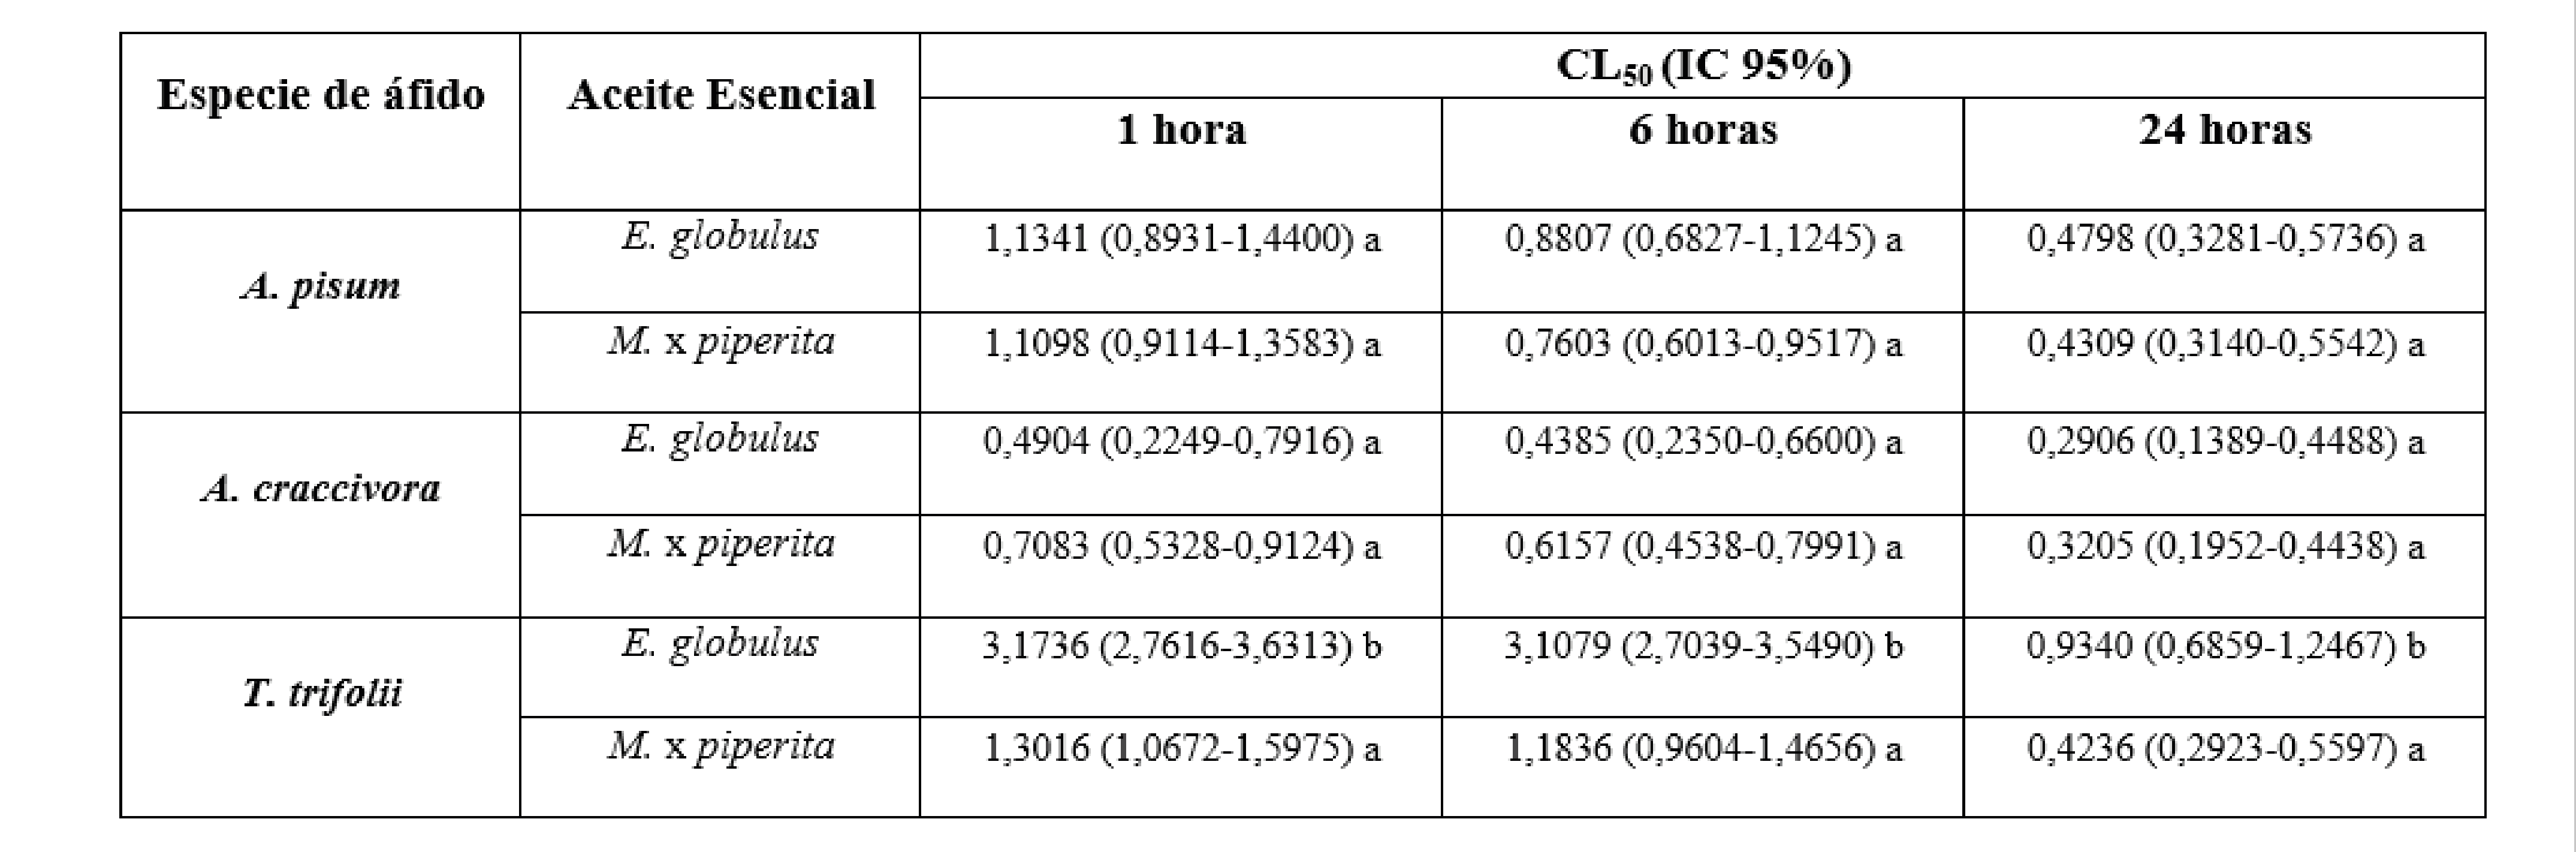 Toxicidad por inmersión de los aceites esenciales sobre A.
pisum, A. craccivora y T. trifolii; CL50: concentración letal 50 (%
p v-1); IC 95%: intervalo de confianza del 95%. Para cada tiempo de
evaluación, valores de CL50 seguidos por la misma letra no difieren
significativamente (NSIC, p ≥ 0,05). / Immersion toxicity
of essentials oils on A. pisum, A. craccivora and T. trifolii; LC50:
lethal concentration 50 (% w v-1); 95% CL: 95% confidence intervals.
Within each evaluation time, LC50 values followed by the same letter
are not significantly different (NSIC, p ≥ 0,05).